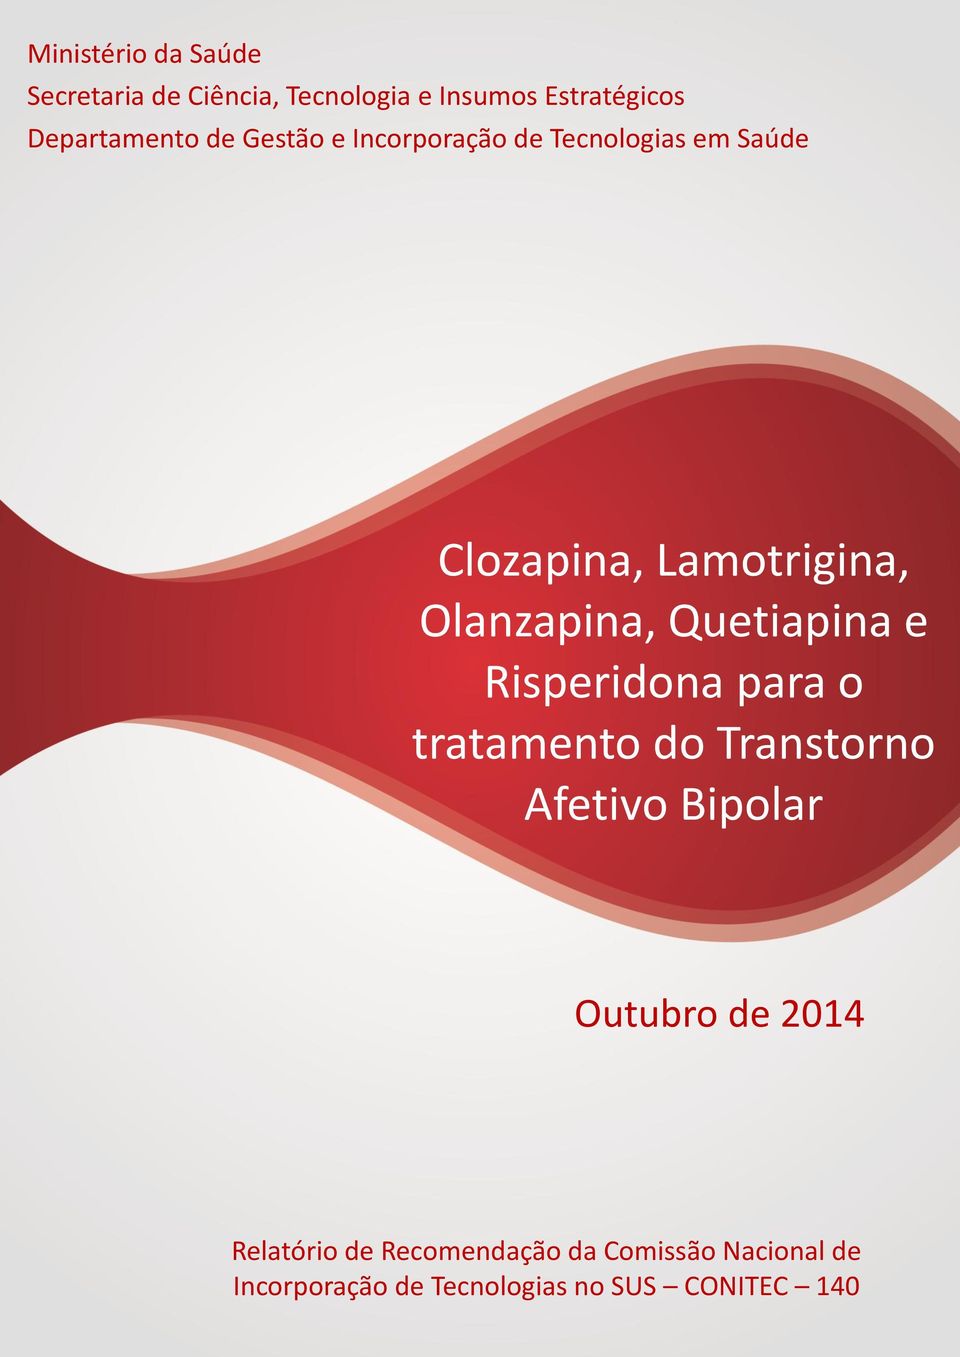 Quetiapina e Risperidona para o tratamento do Transtorno Afetivo Bipolar Outubro de 2014